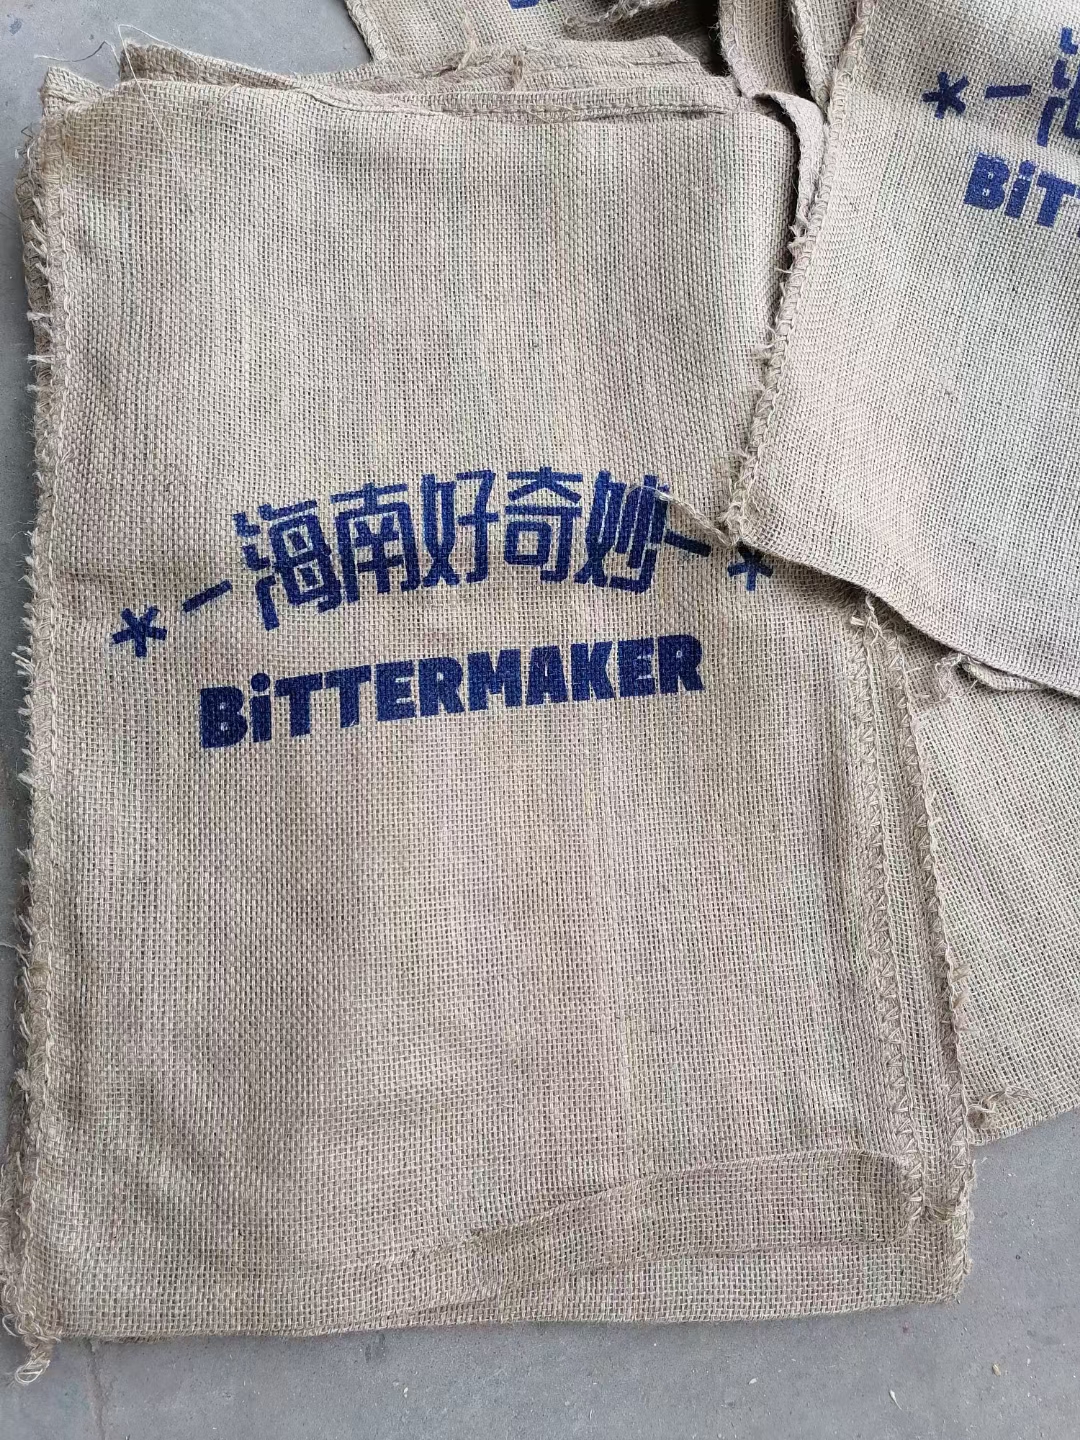 潍坊定制麻袋厂家 加工定制logo编织麻袋多少钱-价格